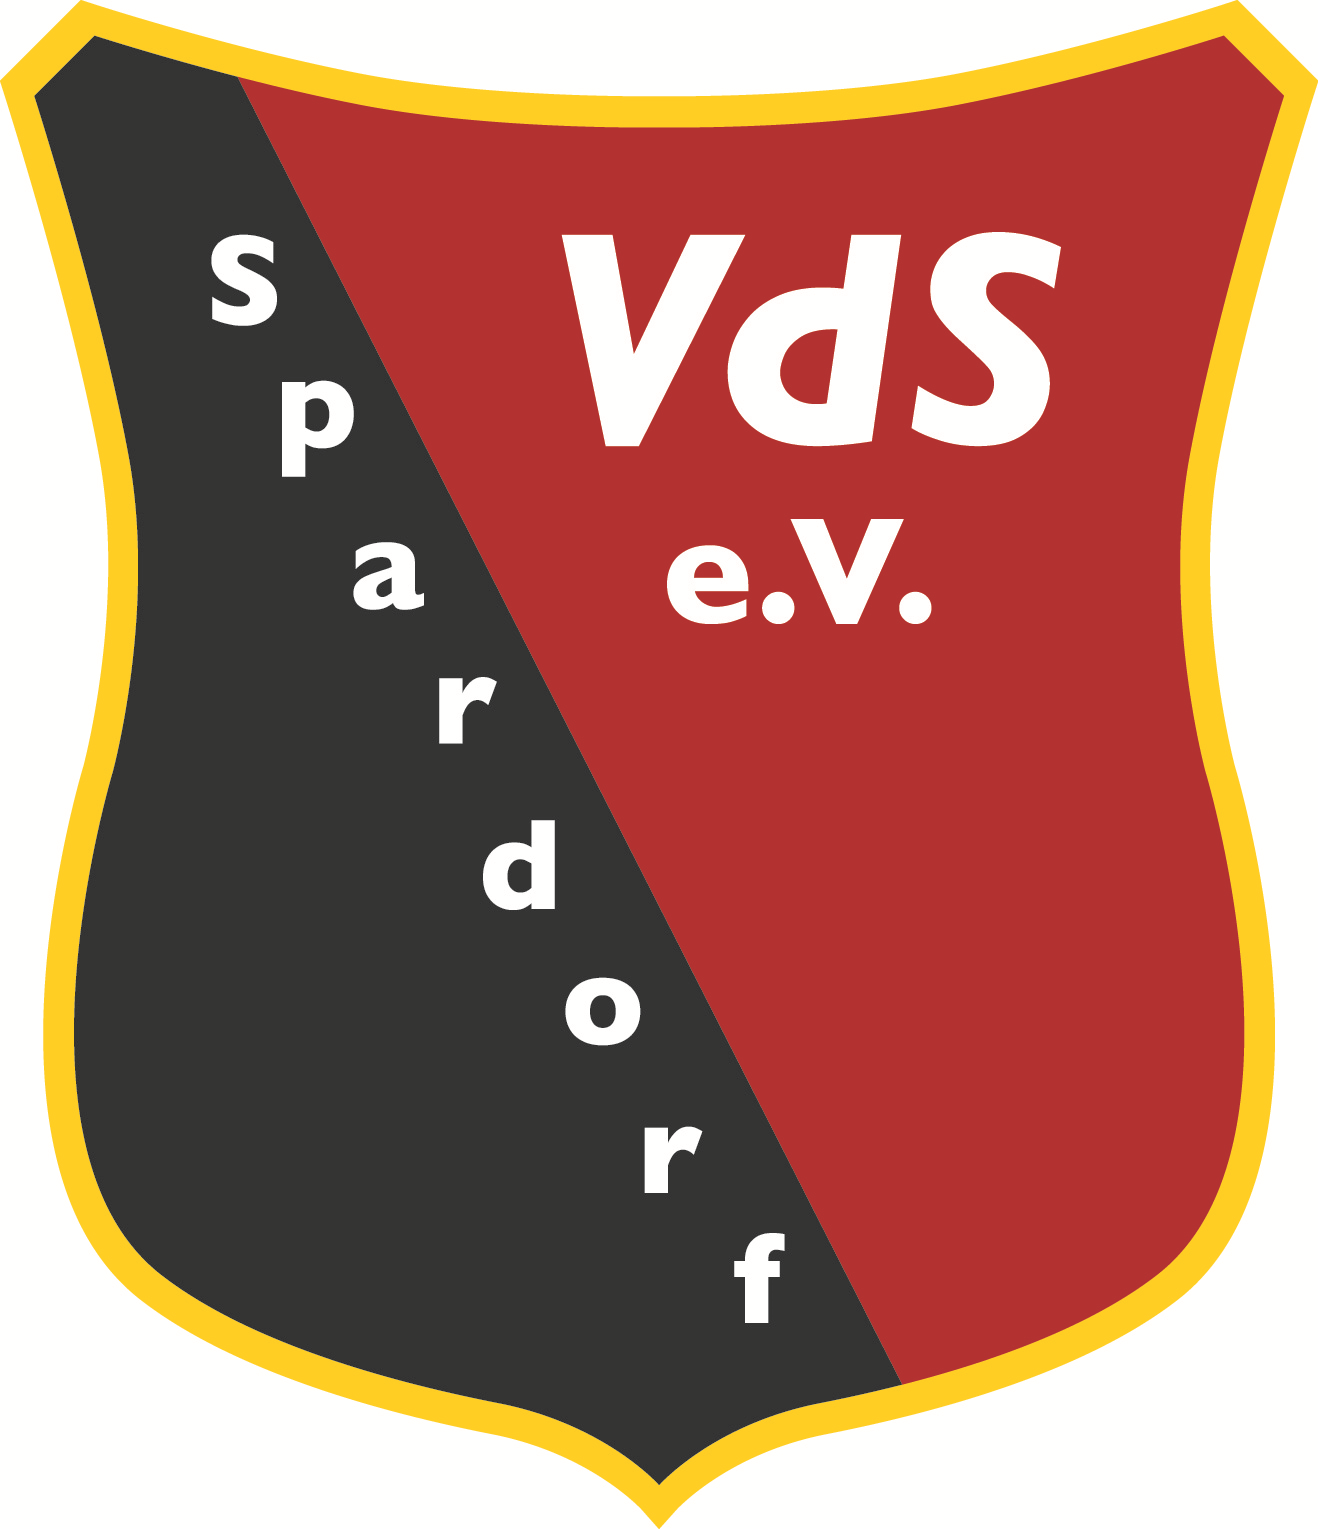 VdS Spardorf Logo